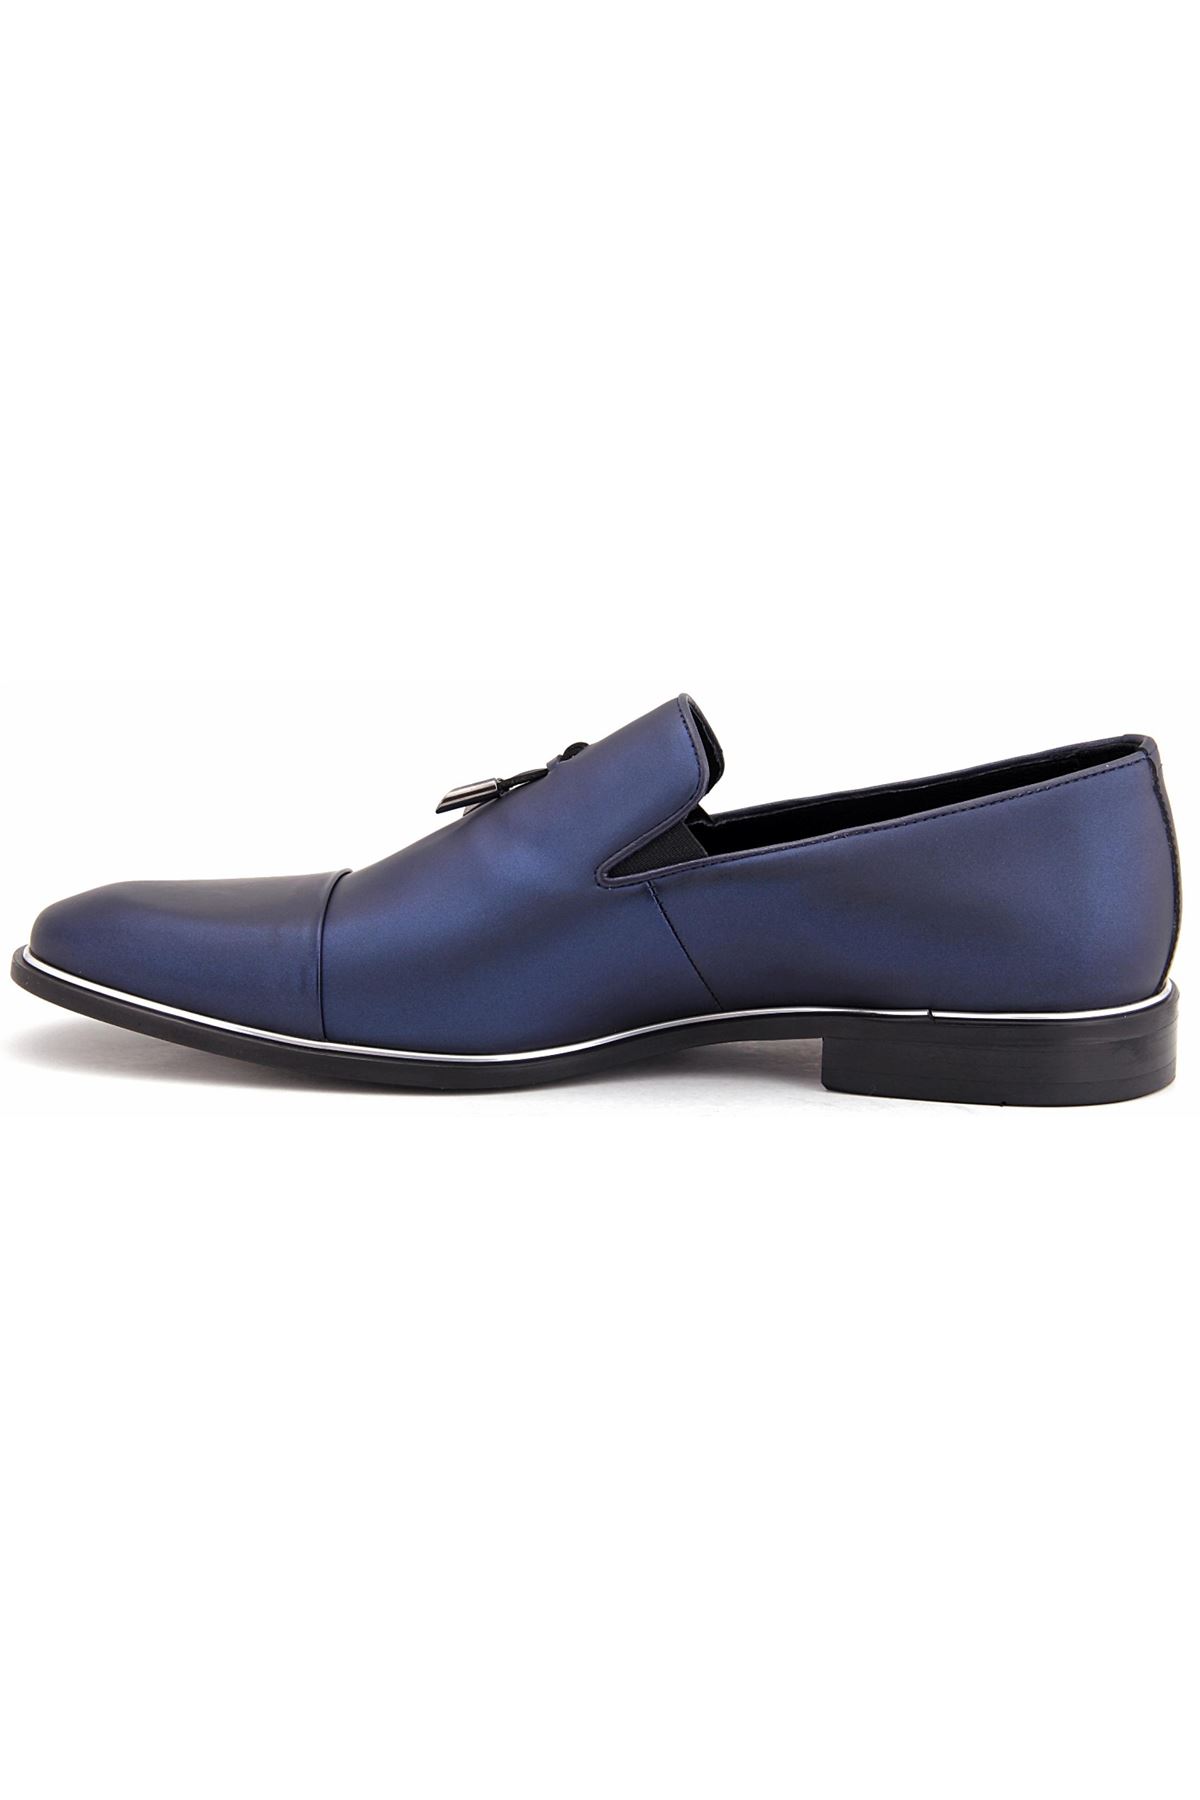 Libero 2385 Klasik Erkek Ayakkabı - Lacivert